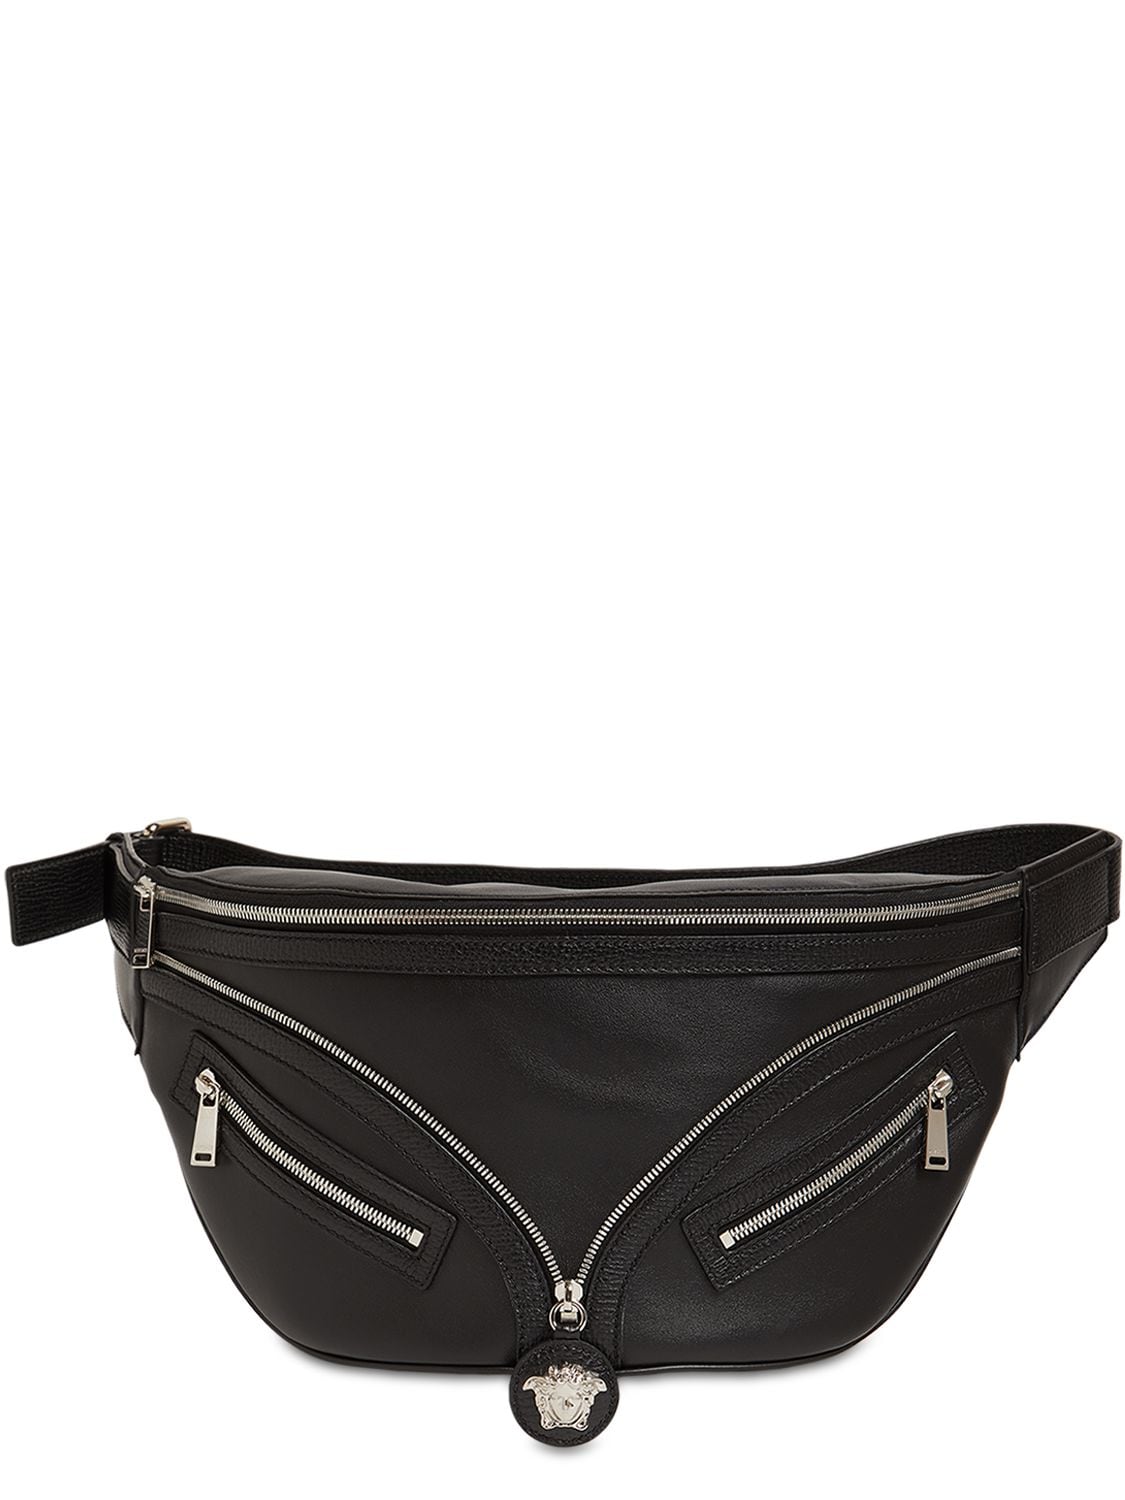 Versace Medusa Leather Belt Bag In Black